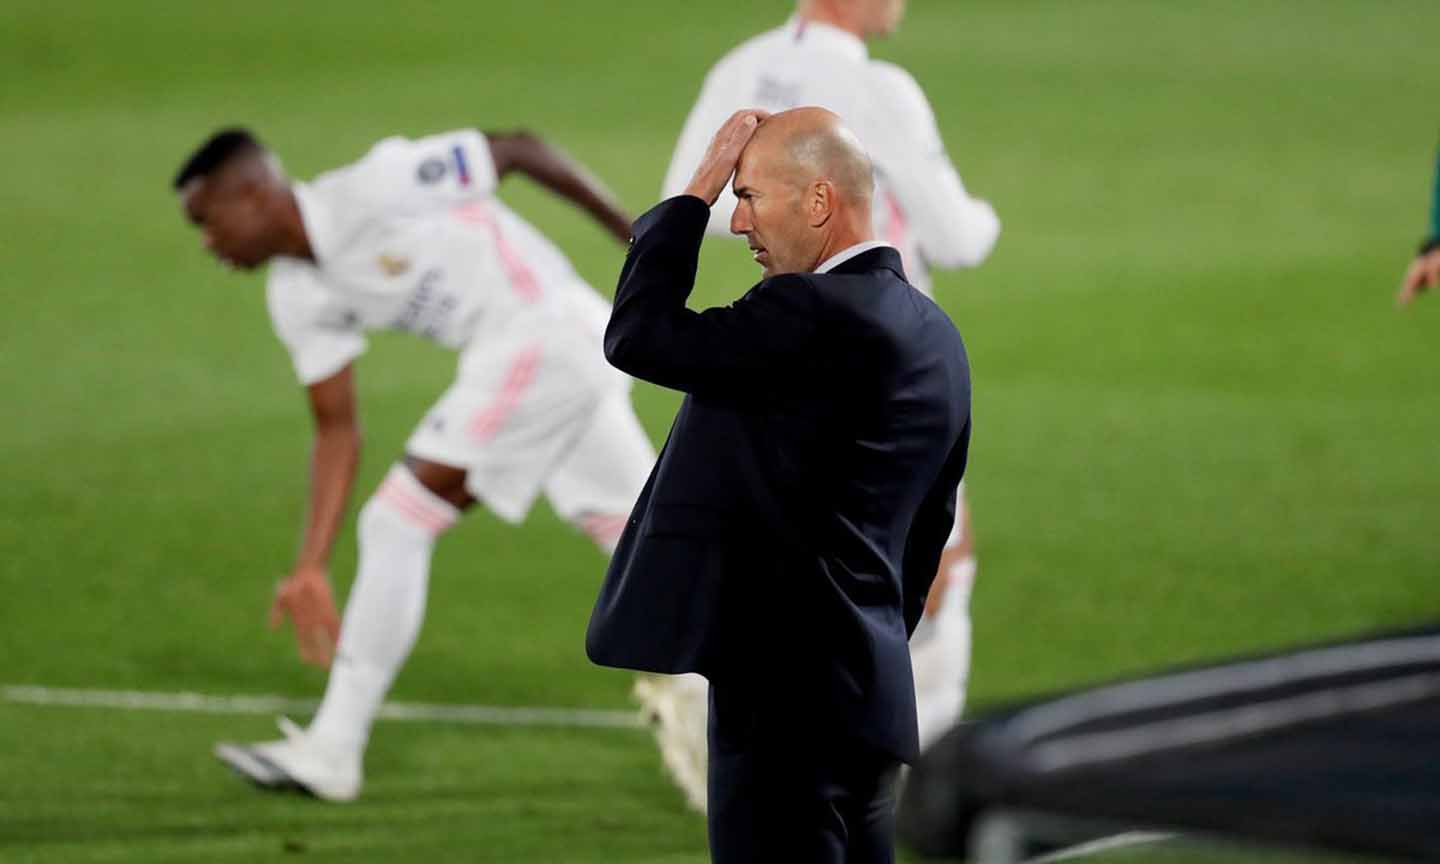 Zidane và các học trò buộc phải thắng ở trận đấu sắp tới để giành quyền tự quyết cho mình cũng như định đoạt chiếc ghế đang lung lay của ông tại Real Madrid. Ảnh: Vietnamnet.vn